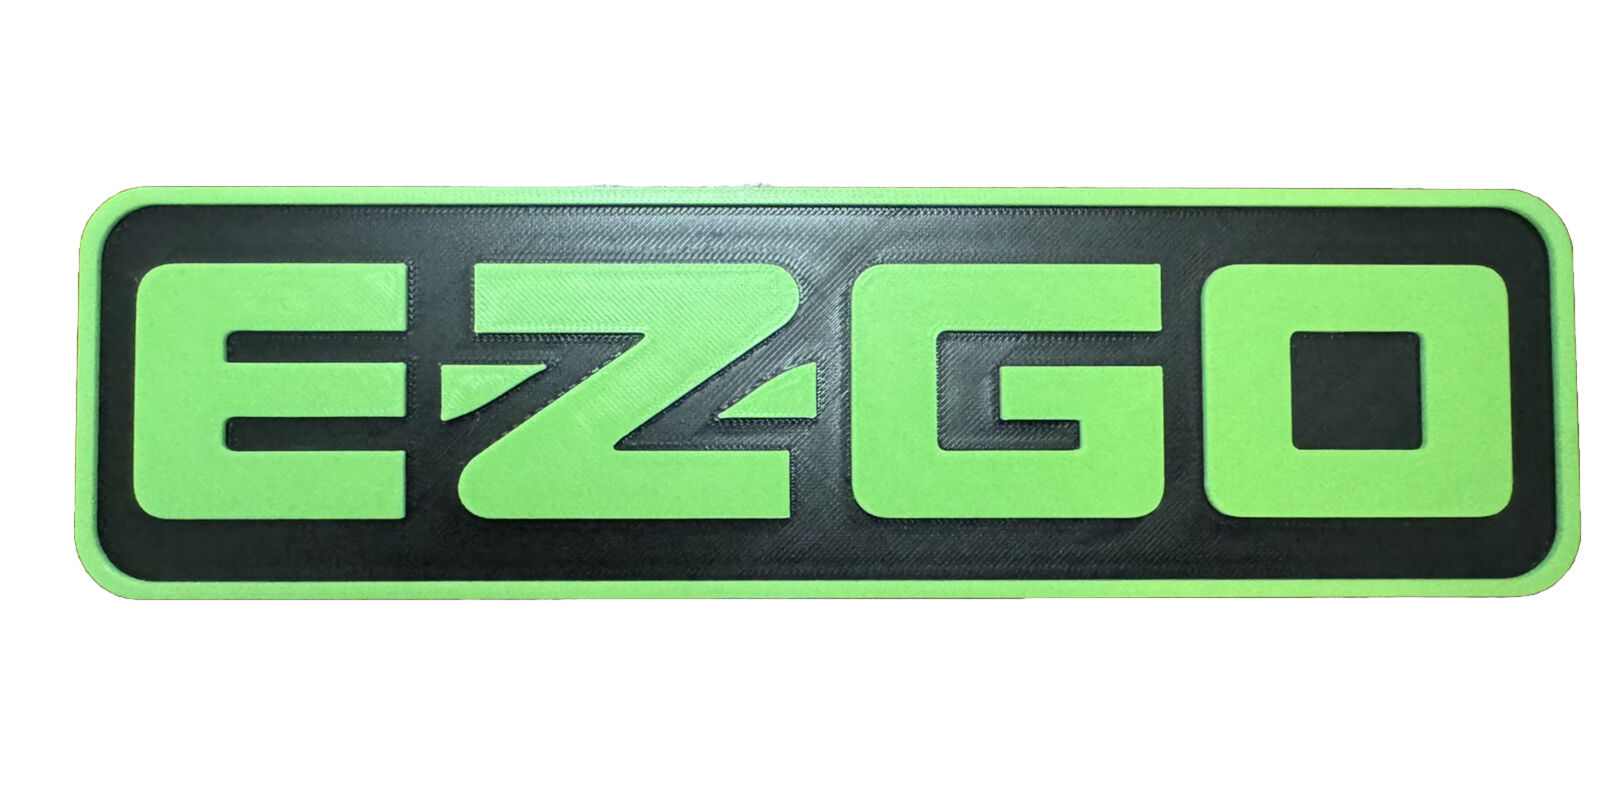 EZGO Name Plate (9.25”x2.5”)- Lime green